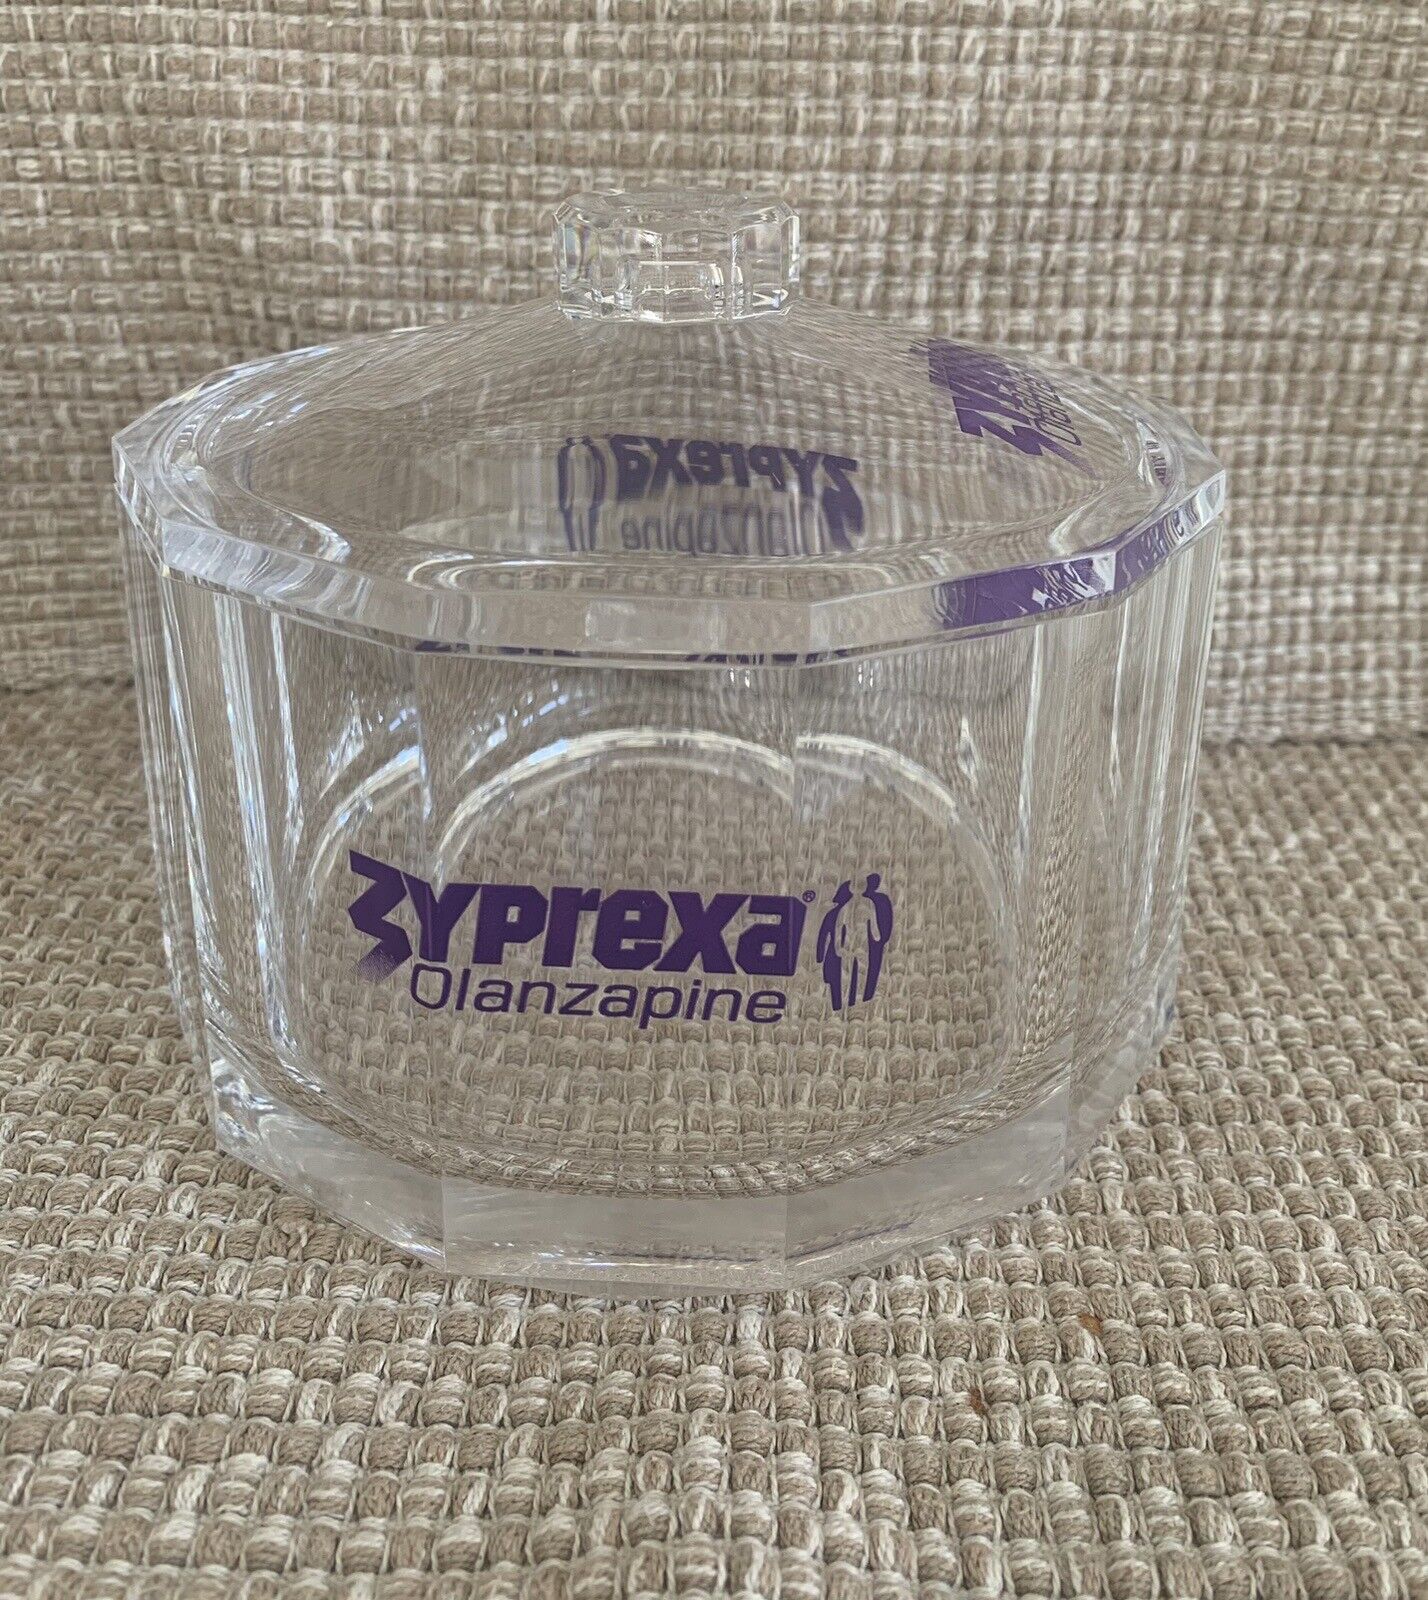 Vintage 1992 Zyprexa Olanzapine Pharmaceutical Promotional Bowl